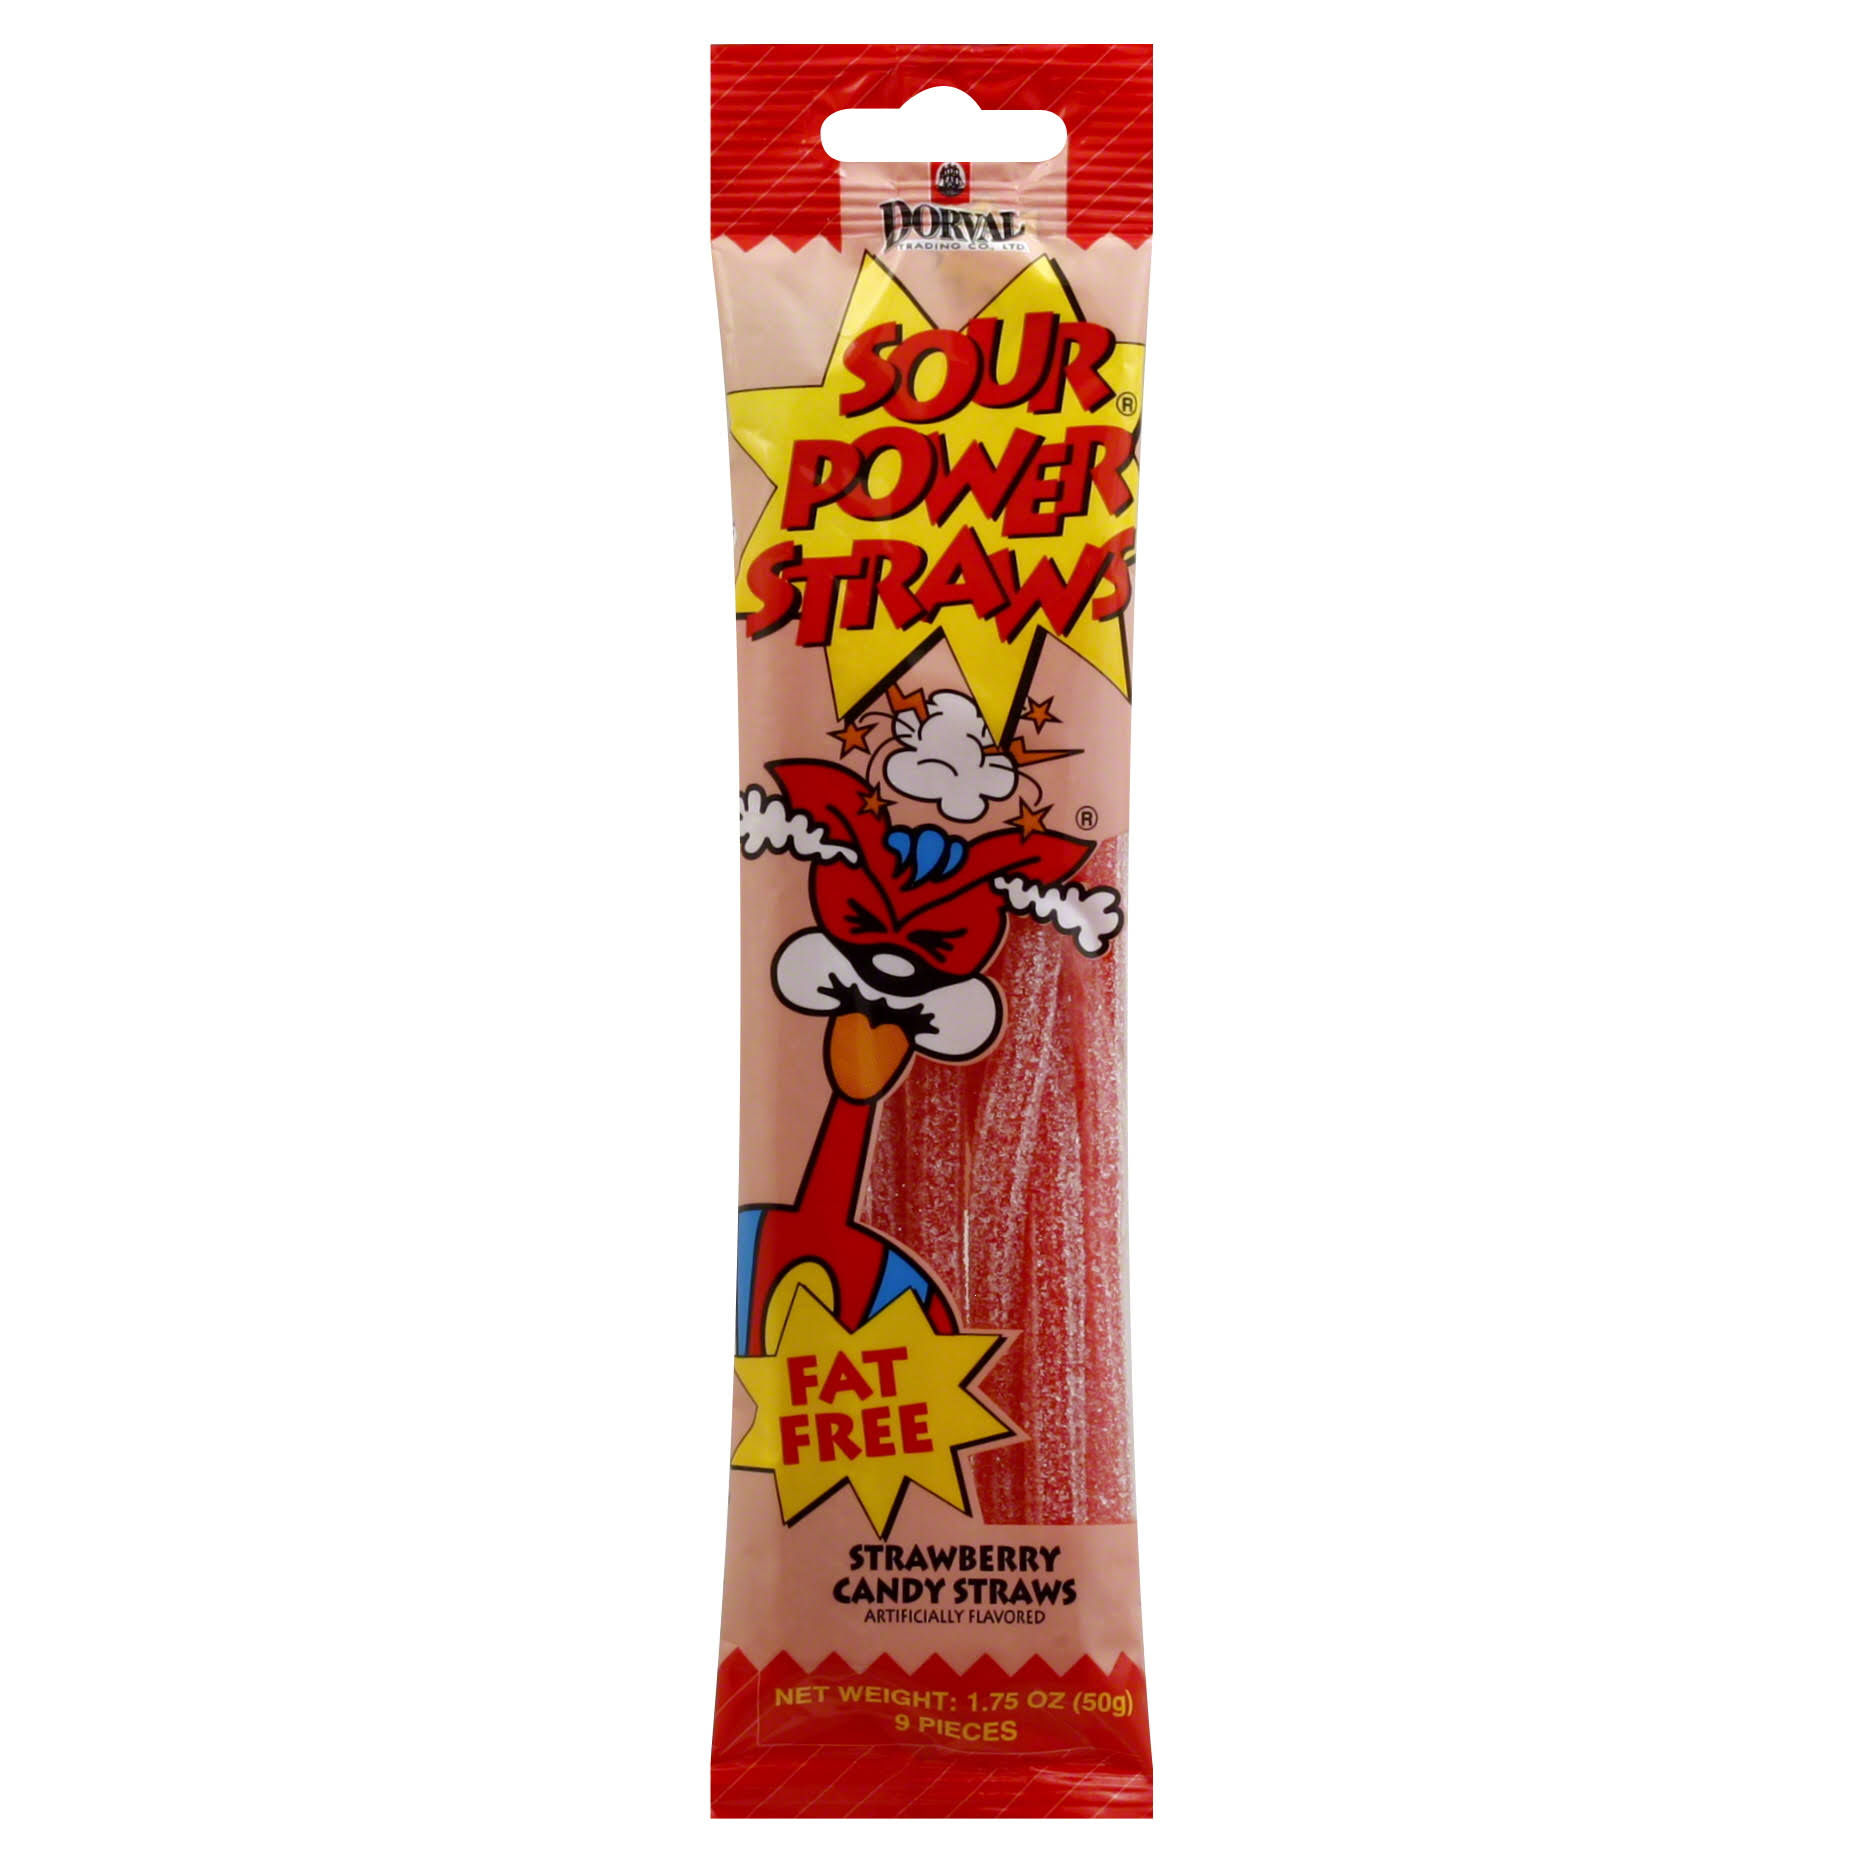 Dorval Sour Power Straws, Strawberry - 9 pieces, 1.75 oz